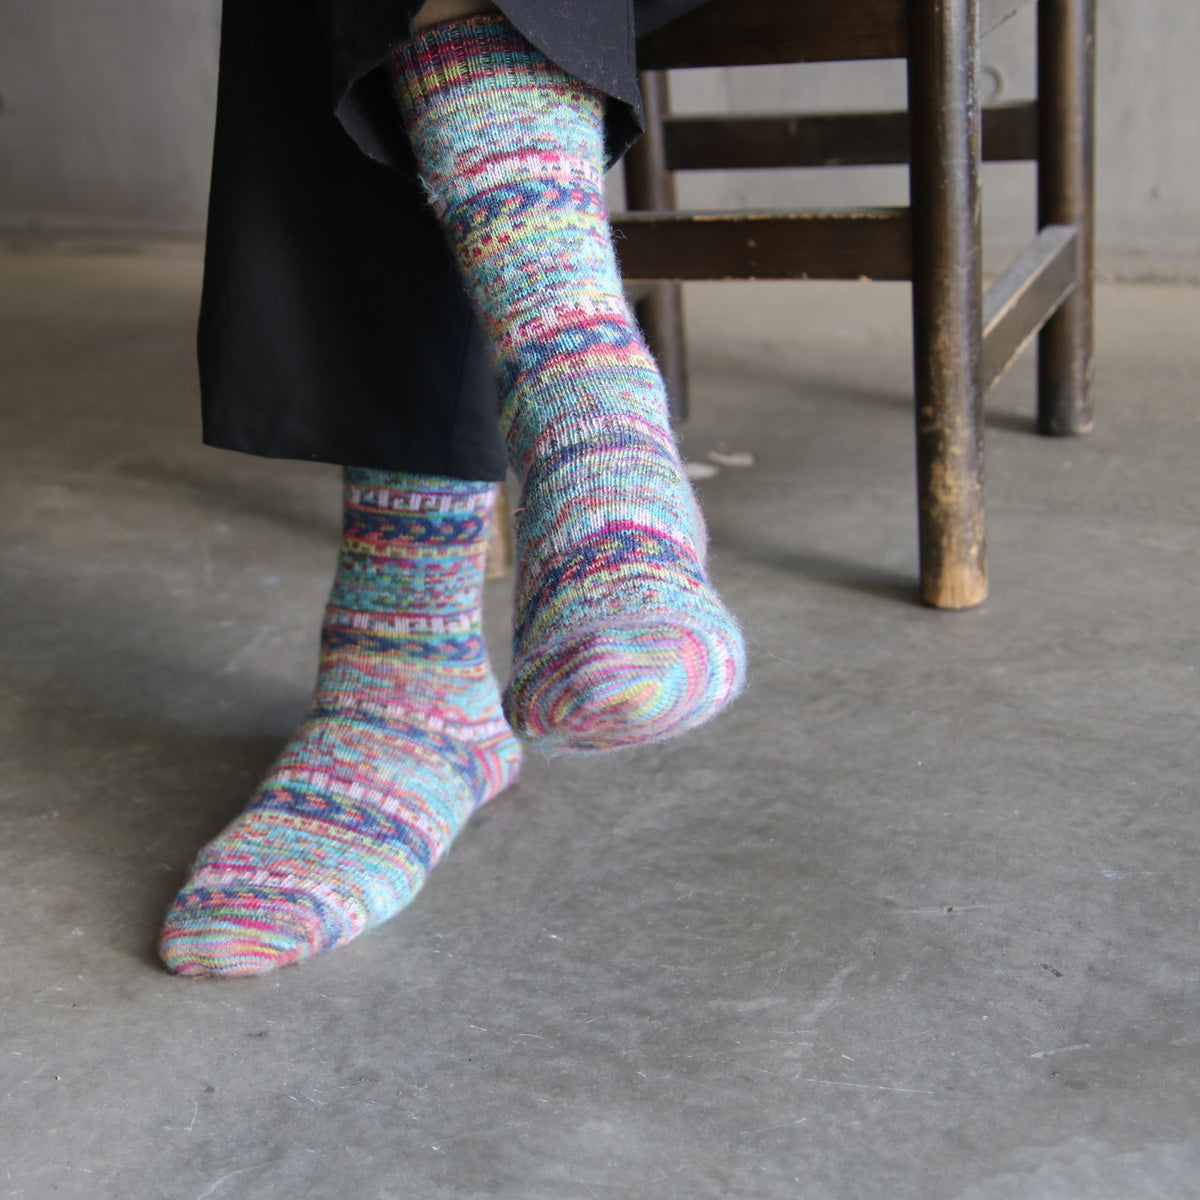 ラナート (LANART) 米国製ベビーアルパカソックス靴下 Artistic Baby Alpaca Socks[DEGAS/CANDY]